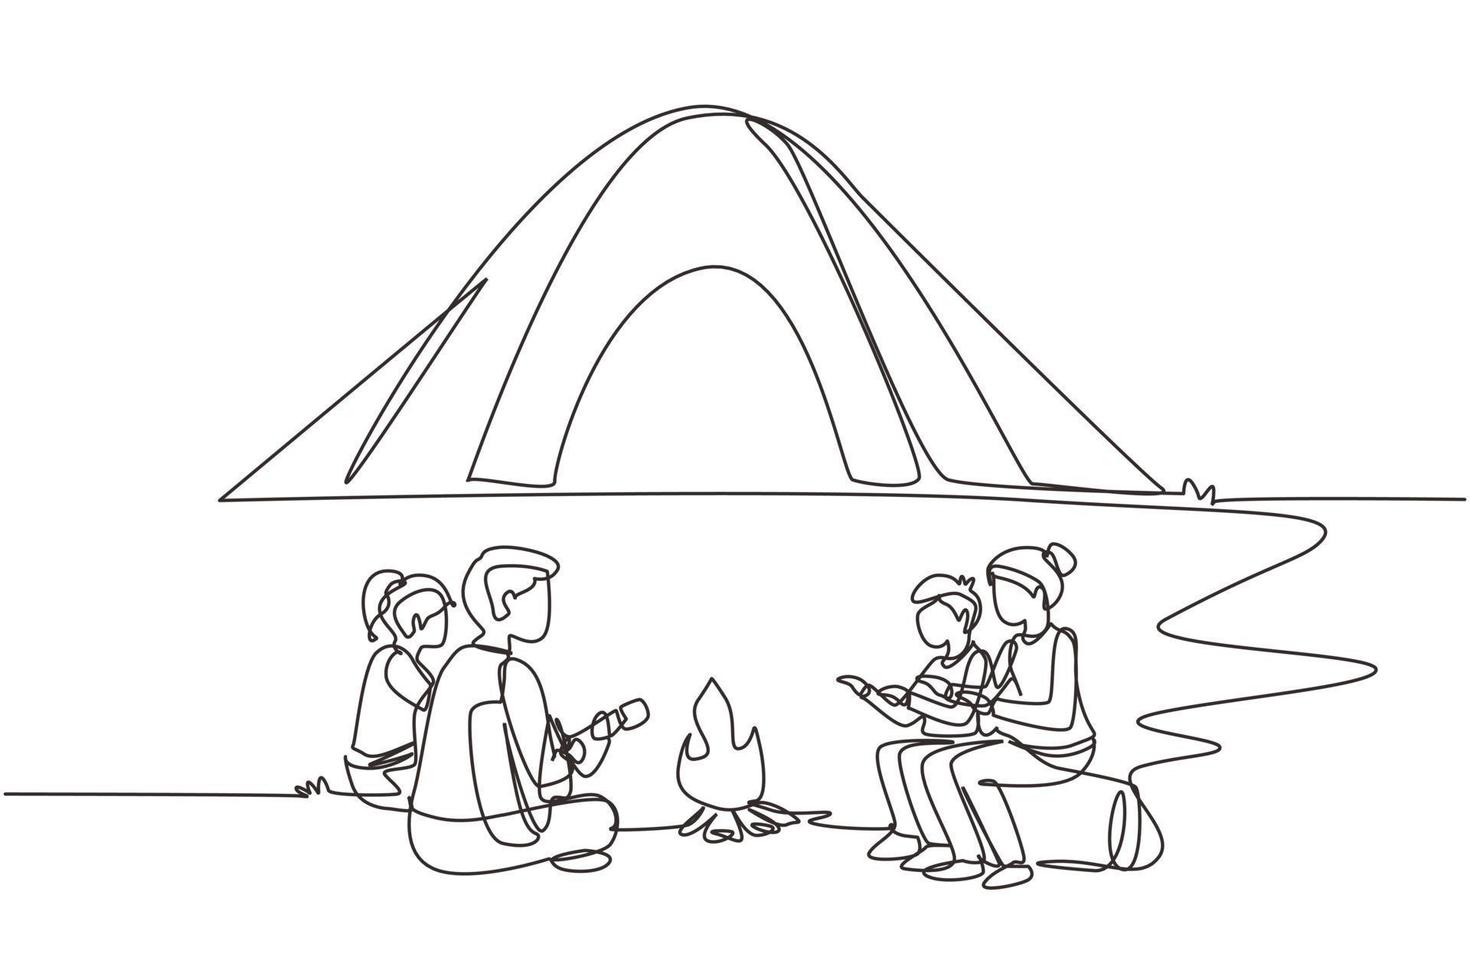 en rad ritning camping familj värme sina kroppar runt lägerelden tält. pappa spelar gitarr, mamma och barn sitter på marken och stockar, sjunger sång. kontinuerlig linje rita design vektorillustration vektor